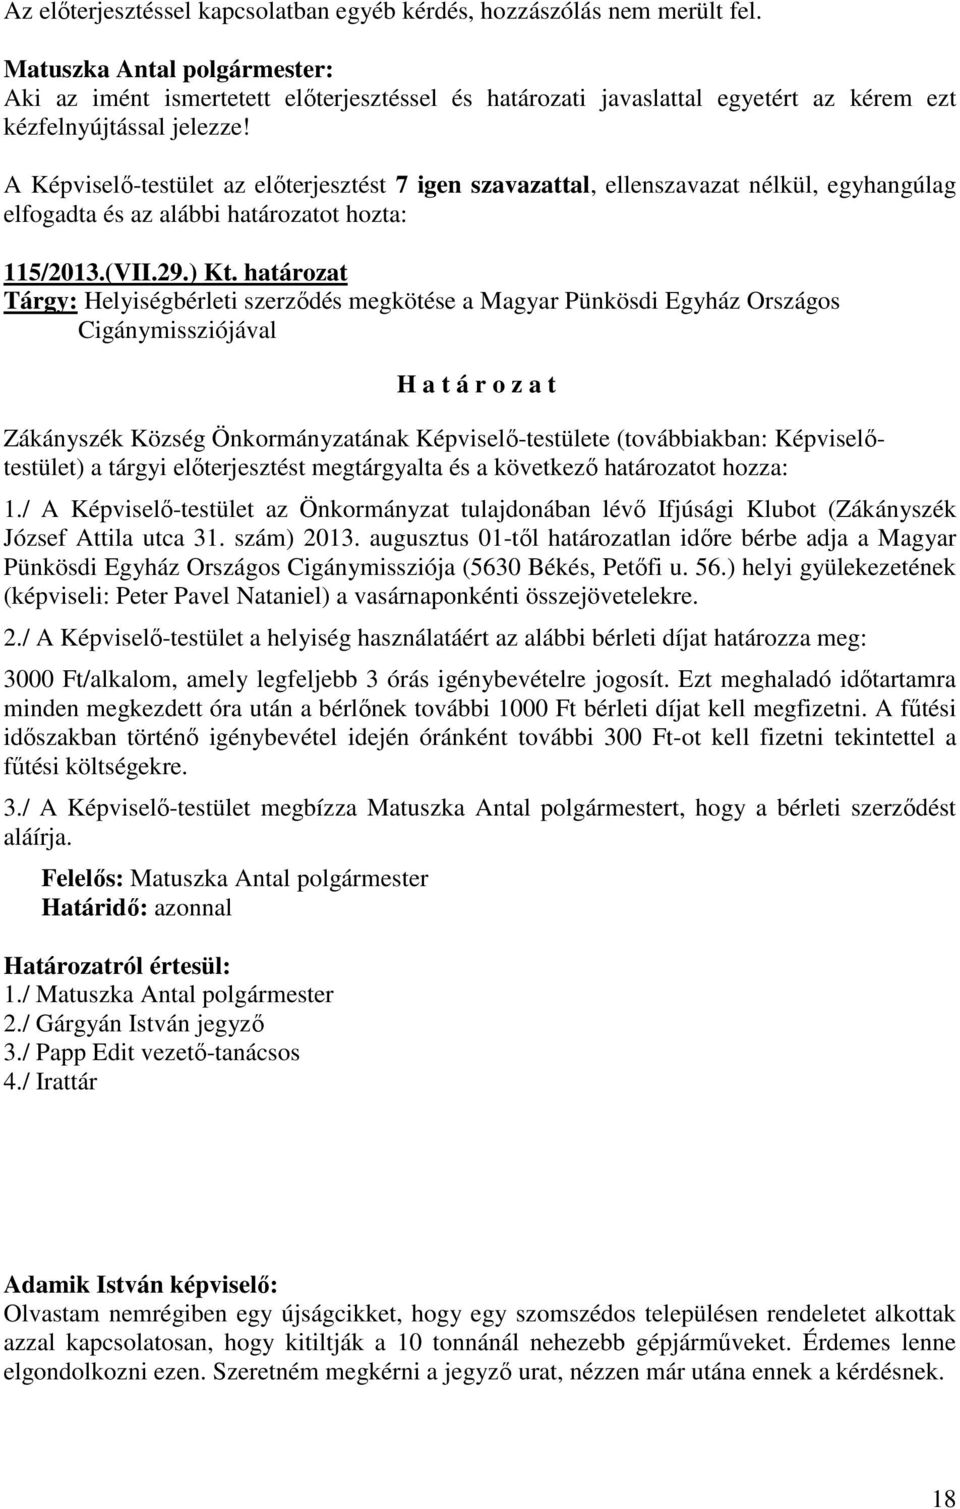 határozat Tárgy: Helyiségbérleti szerződés megkötése a Magyar Pünkösdi Egyház Országos Cigánymissziójával Zákányszék Község Önkormányzatának Képviselő-testülete (továbbiakban: Képviselőtestület) a